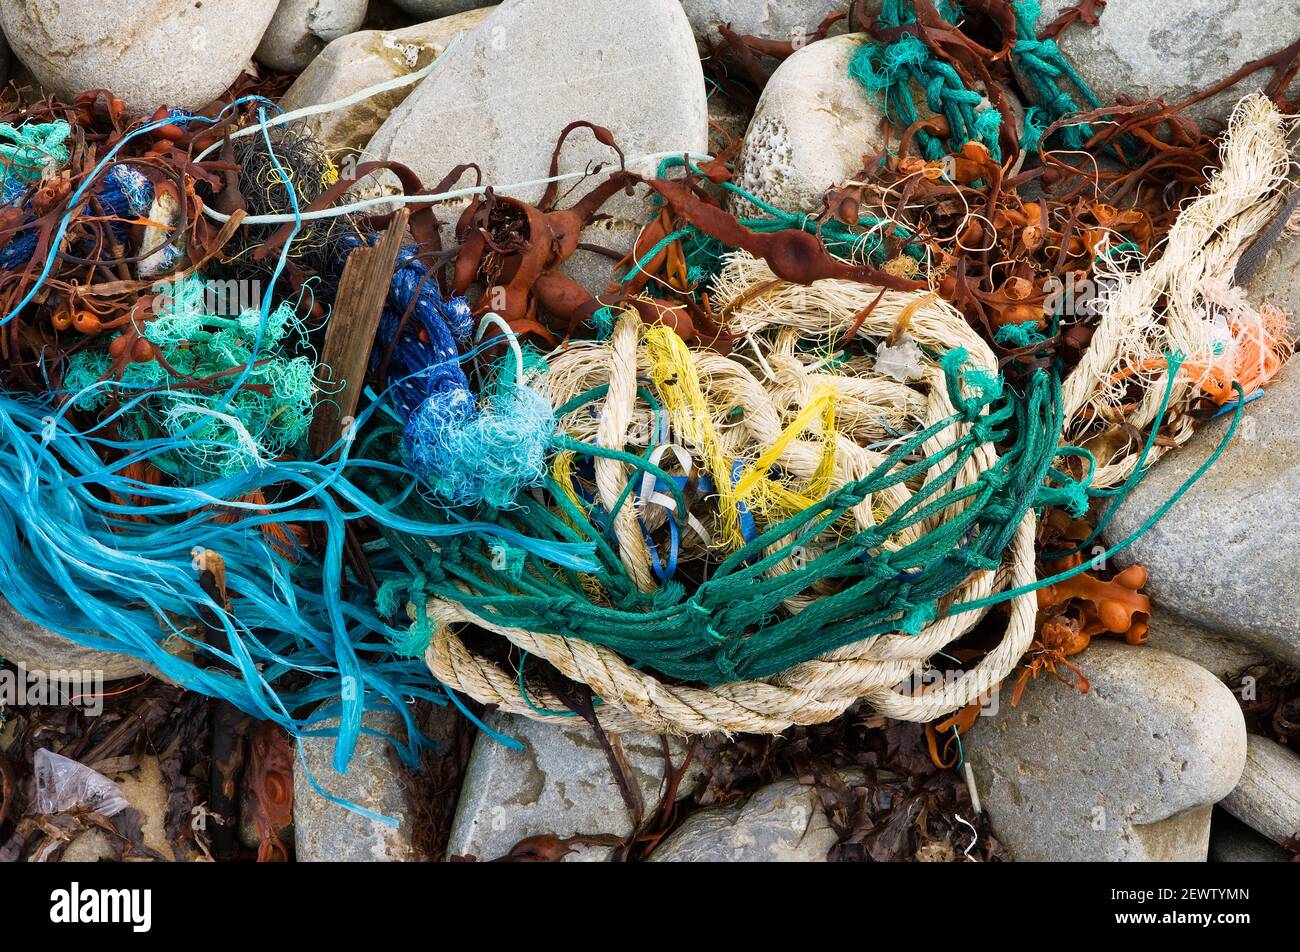 Die Reste von Fischernetzen und Seilen wurden an einer Kiesküste in West Cork, Irland, gespült. Meeresschutt und Müll werden zu einem großen Problem. Stockfoto